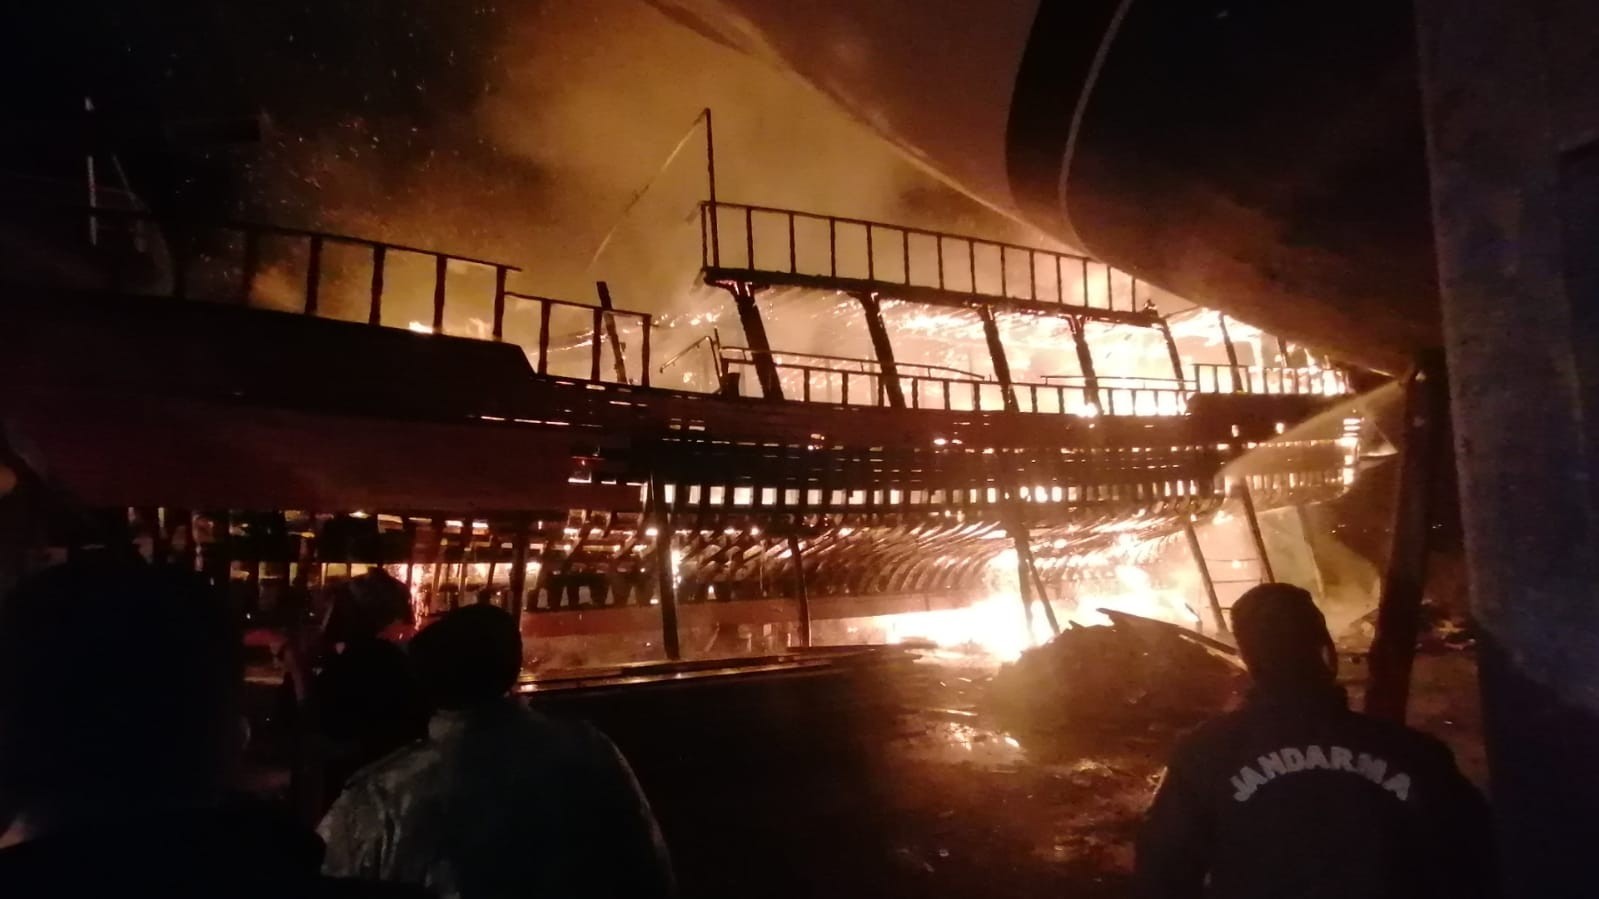 Tamirattaki 26 metrelik tur teknesi alev alev yandı #antalya